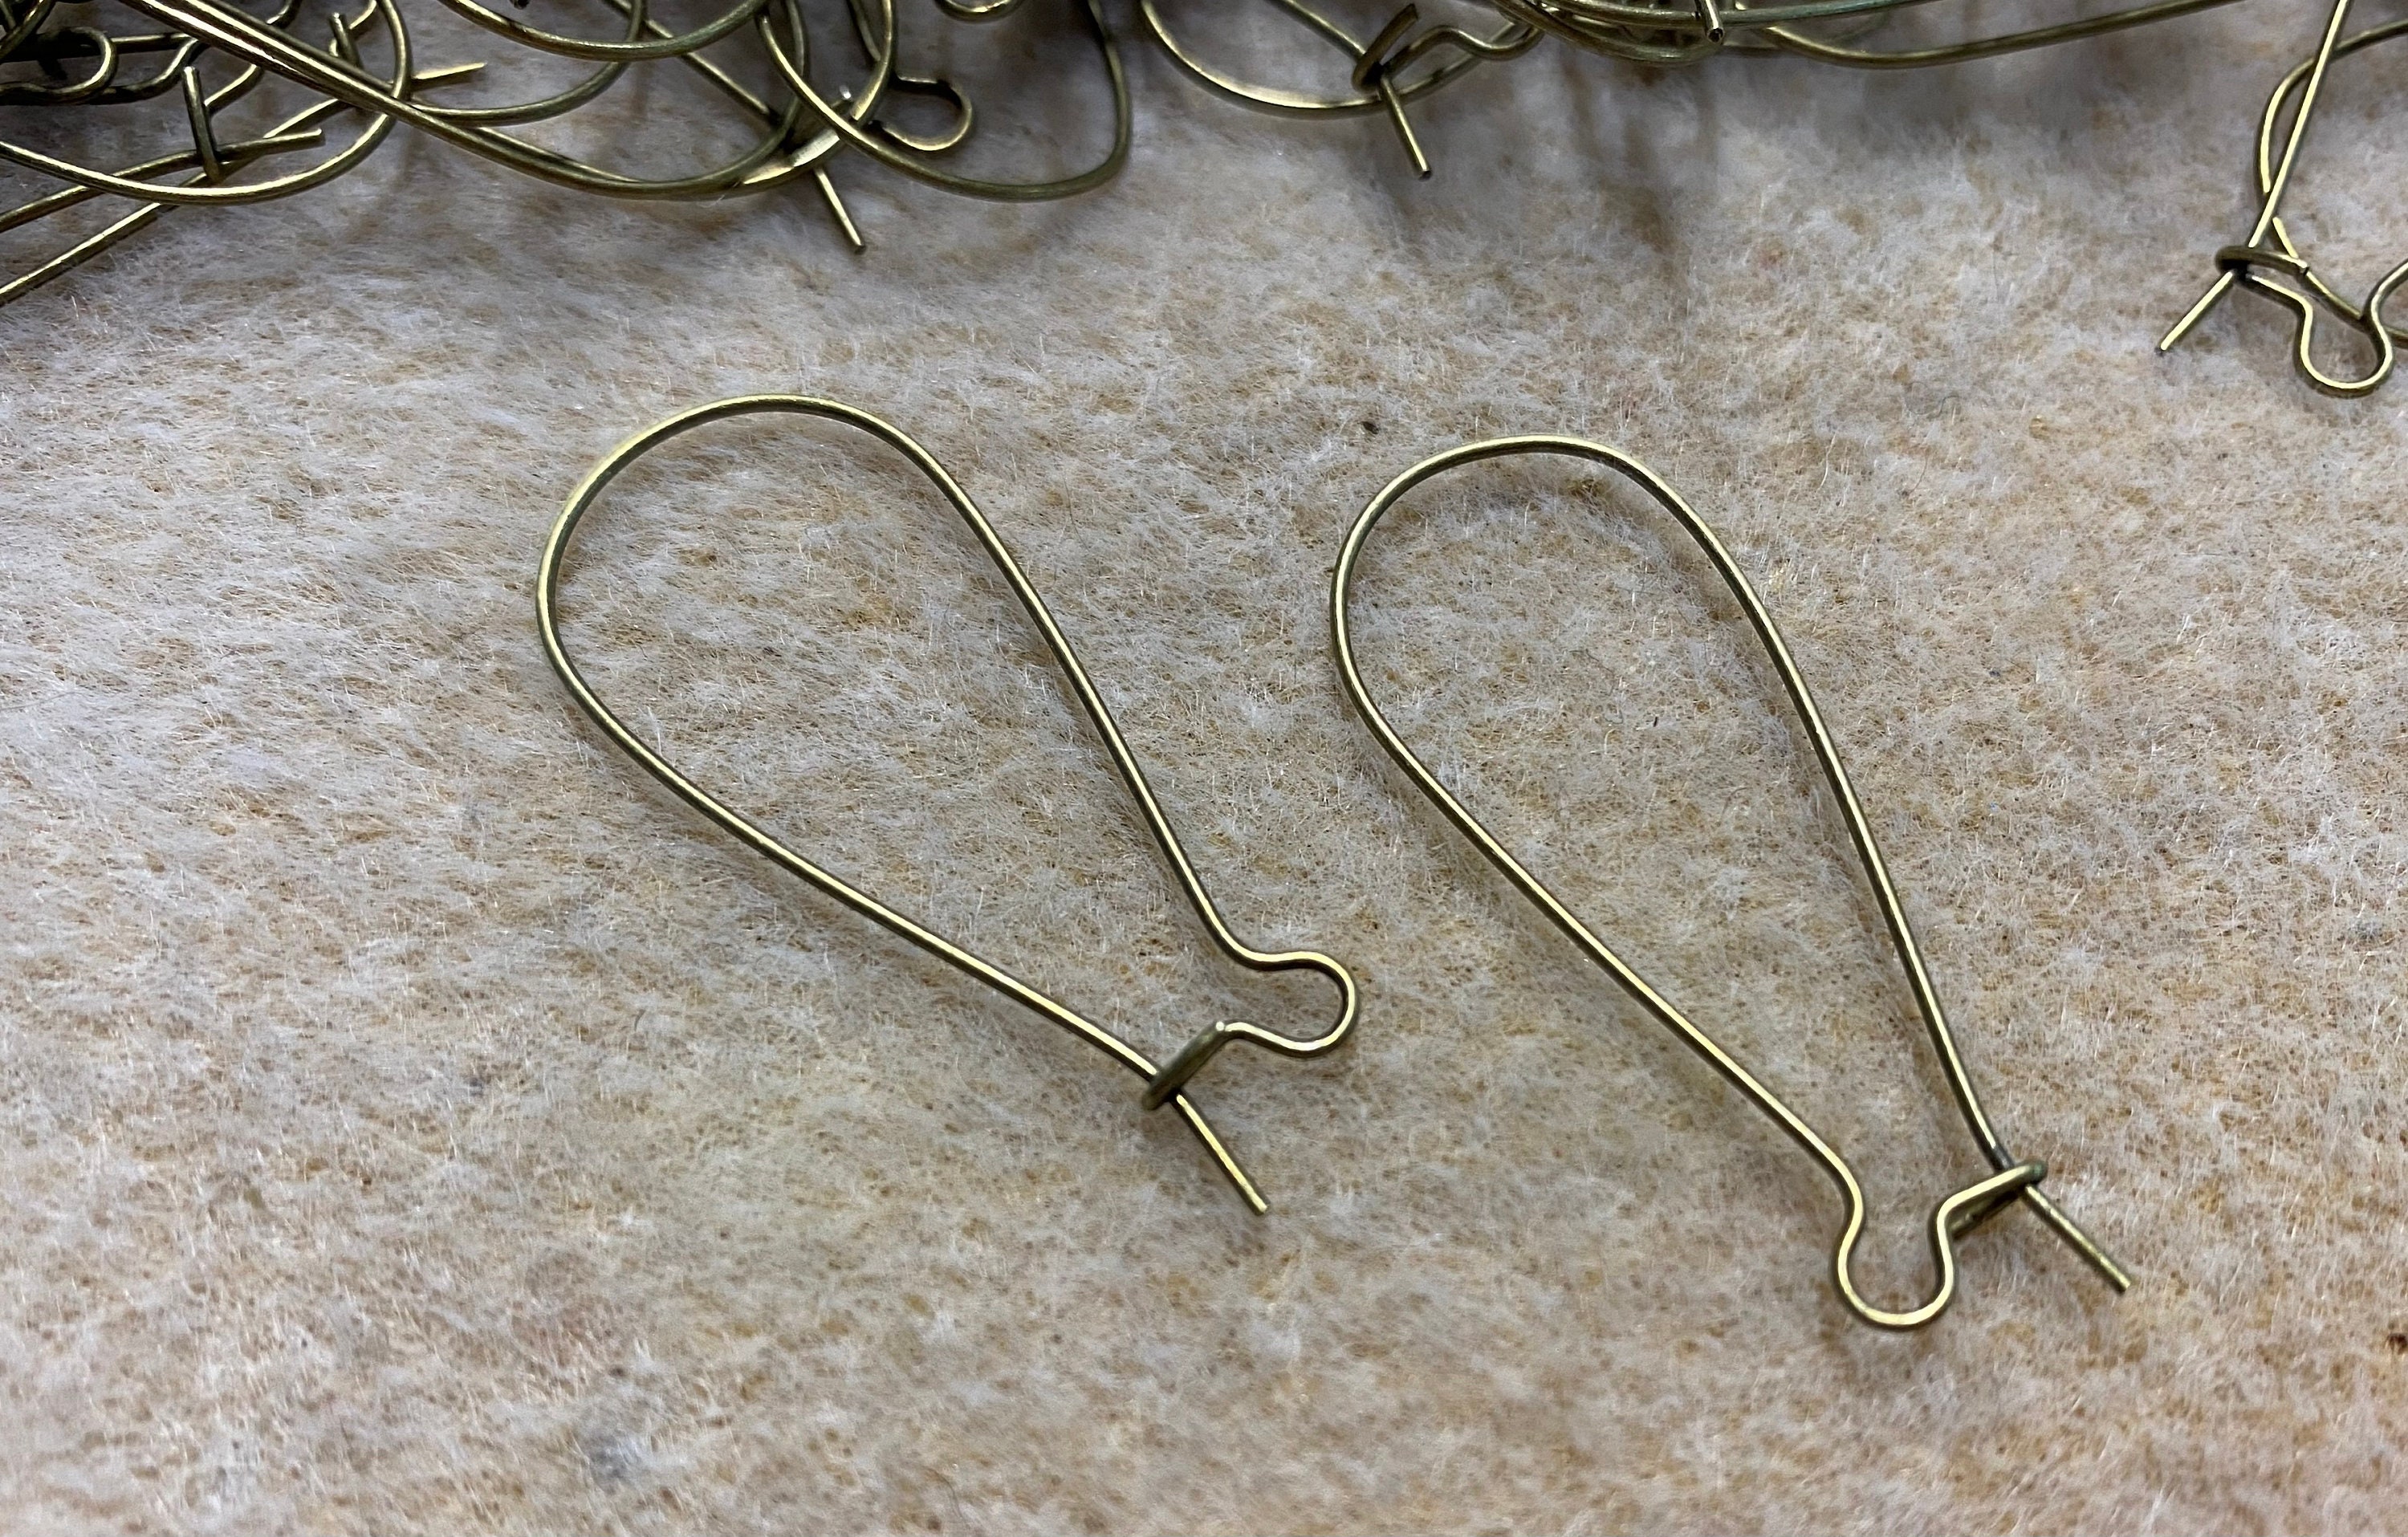 Ear Wires - Kidney 1 | Wire jewelry patterns, Kidney wire earrings, Wire  work jewelry